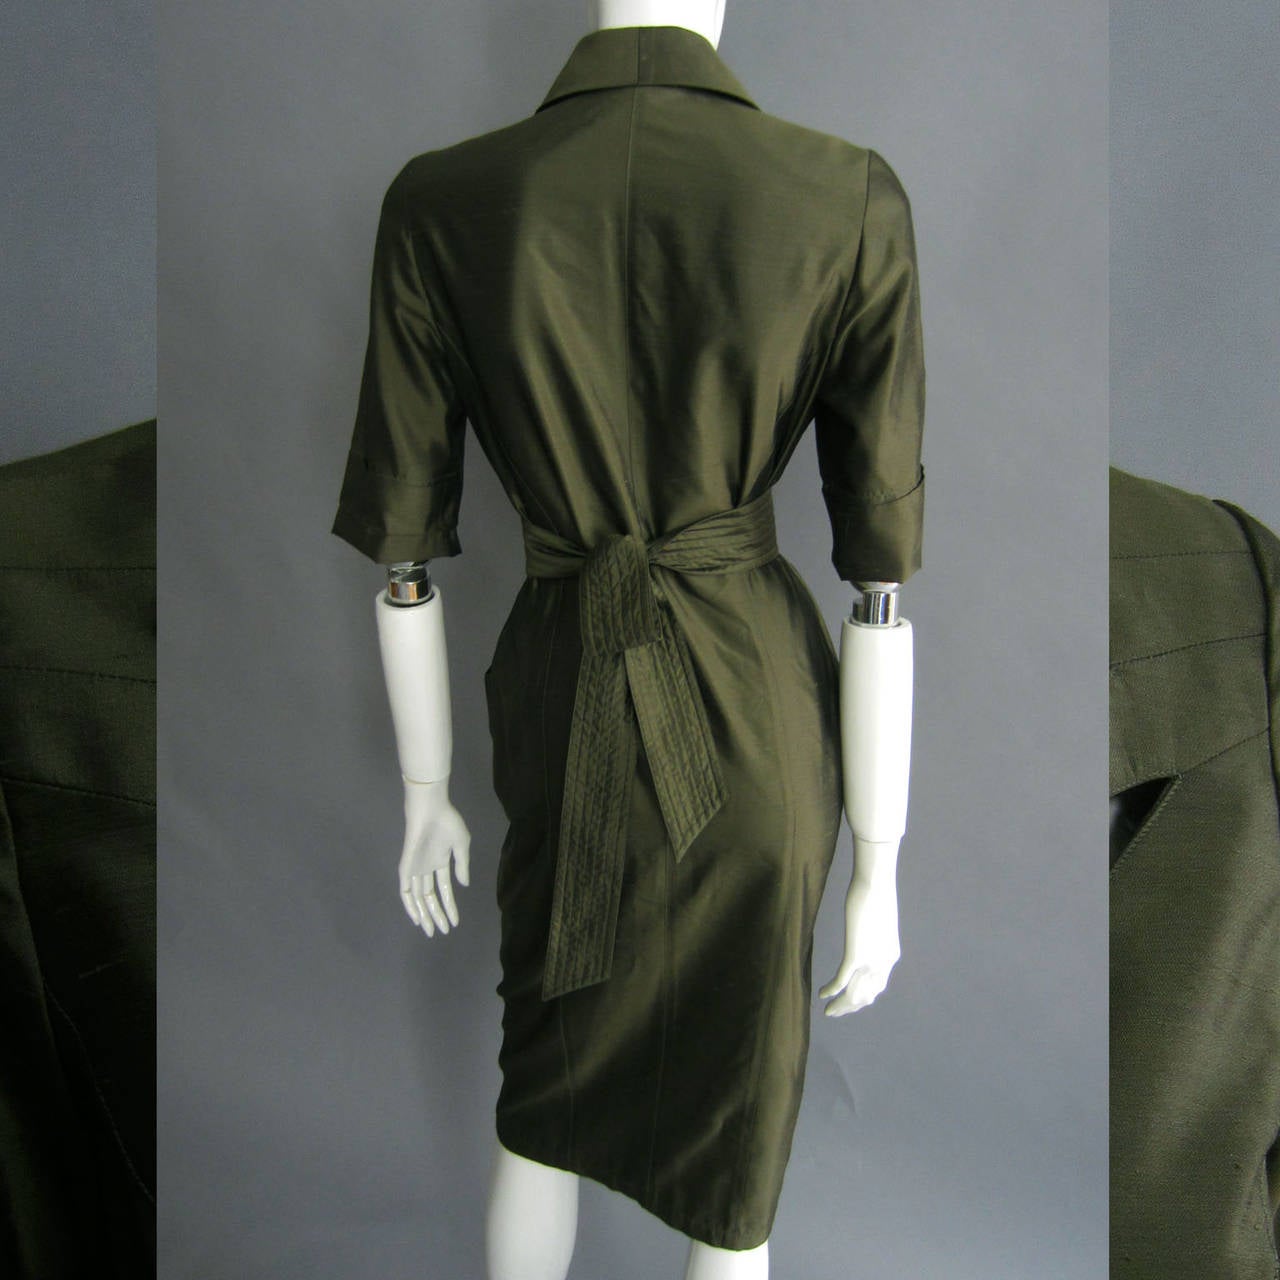 THIERRY MUGLER Green Silk Dress with Cutout Details and Obi Belt 1